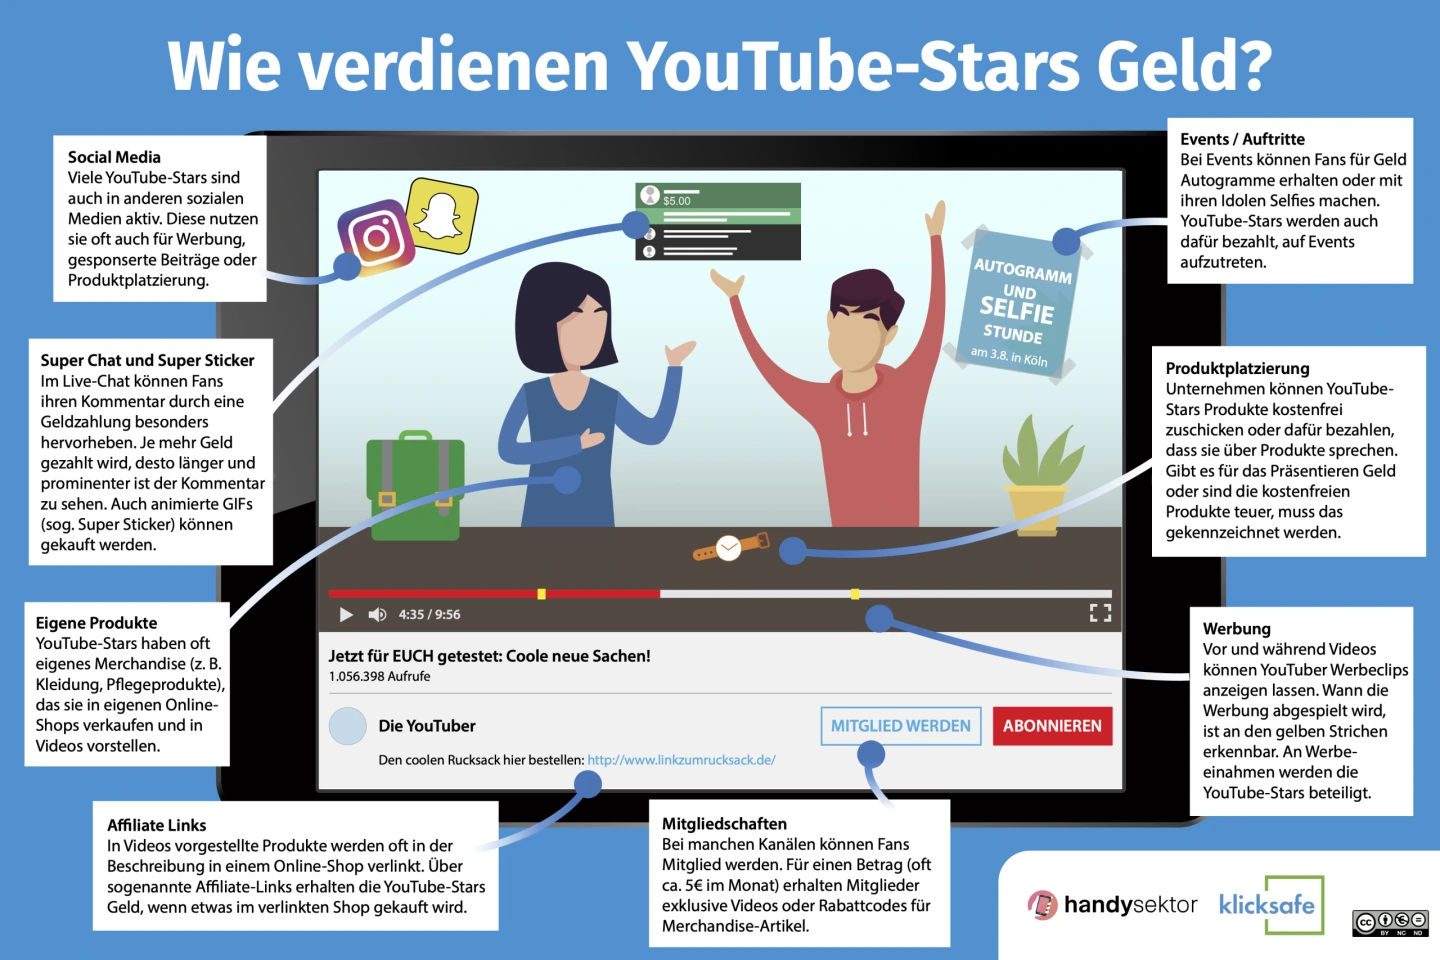 Die Infografik zeigt verschiedene Wege, wie YouTube-Stars Geld verdienen z. B. durch Werbung, Produktplatzierung, Events, eigene Produkte